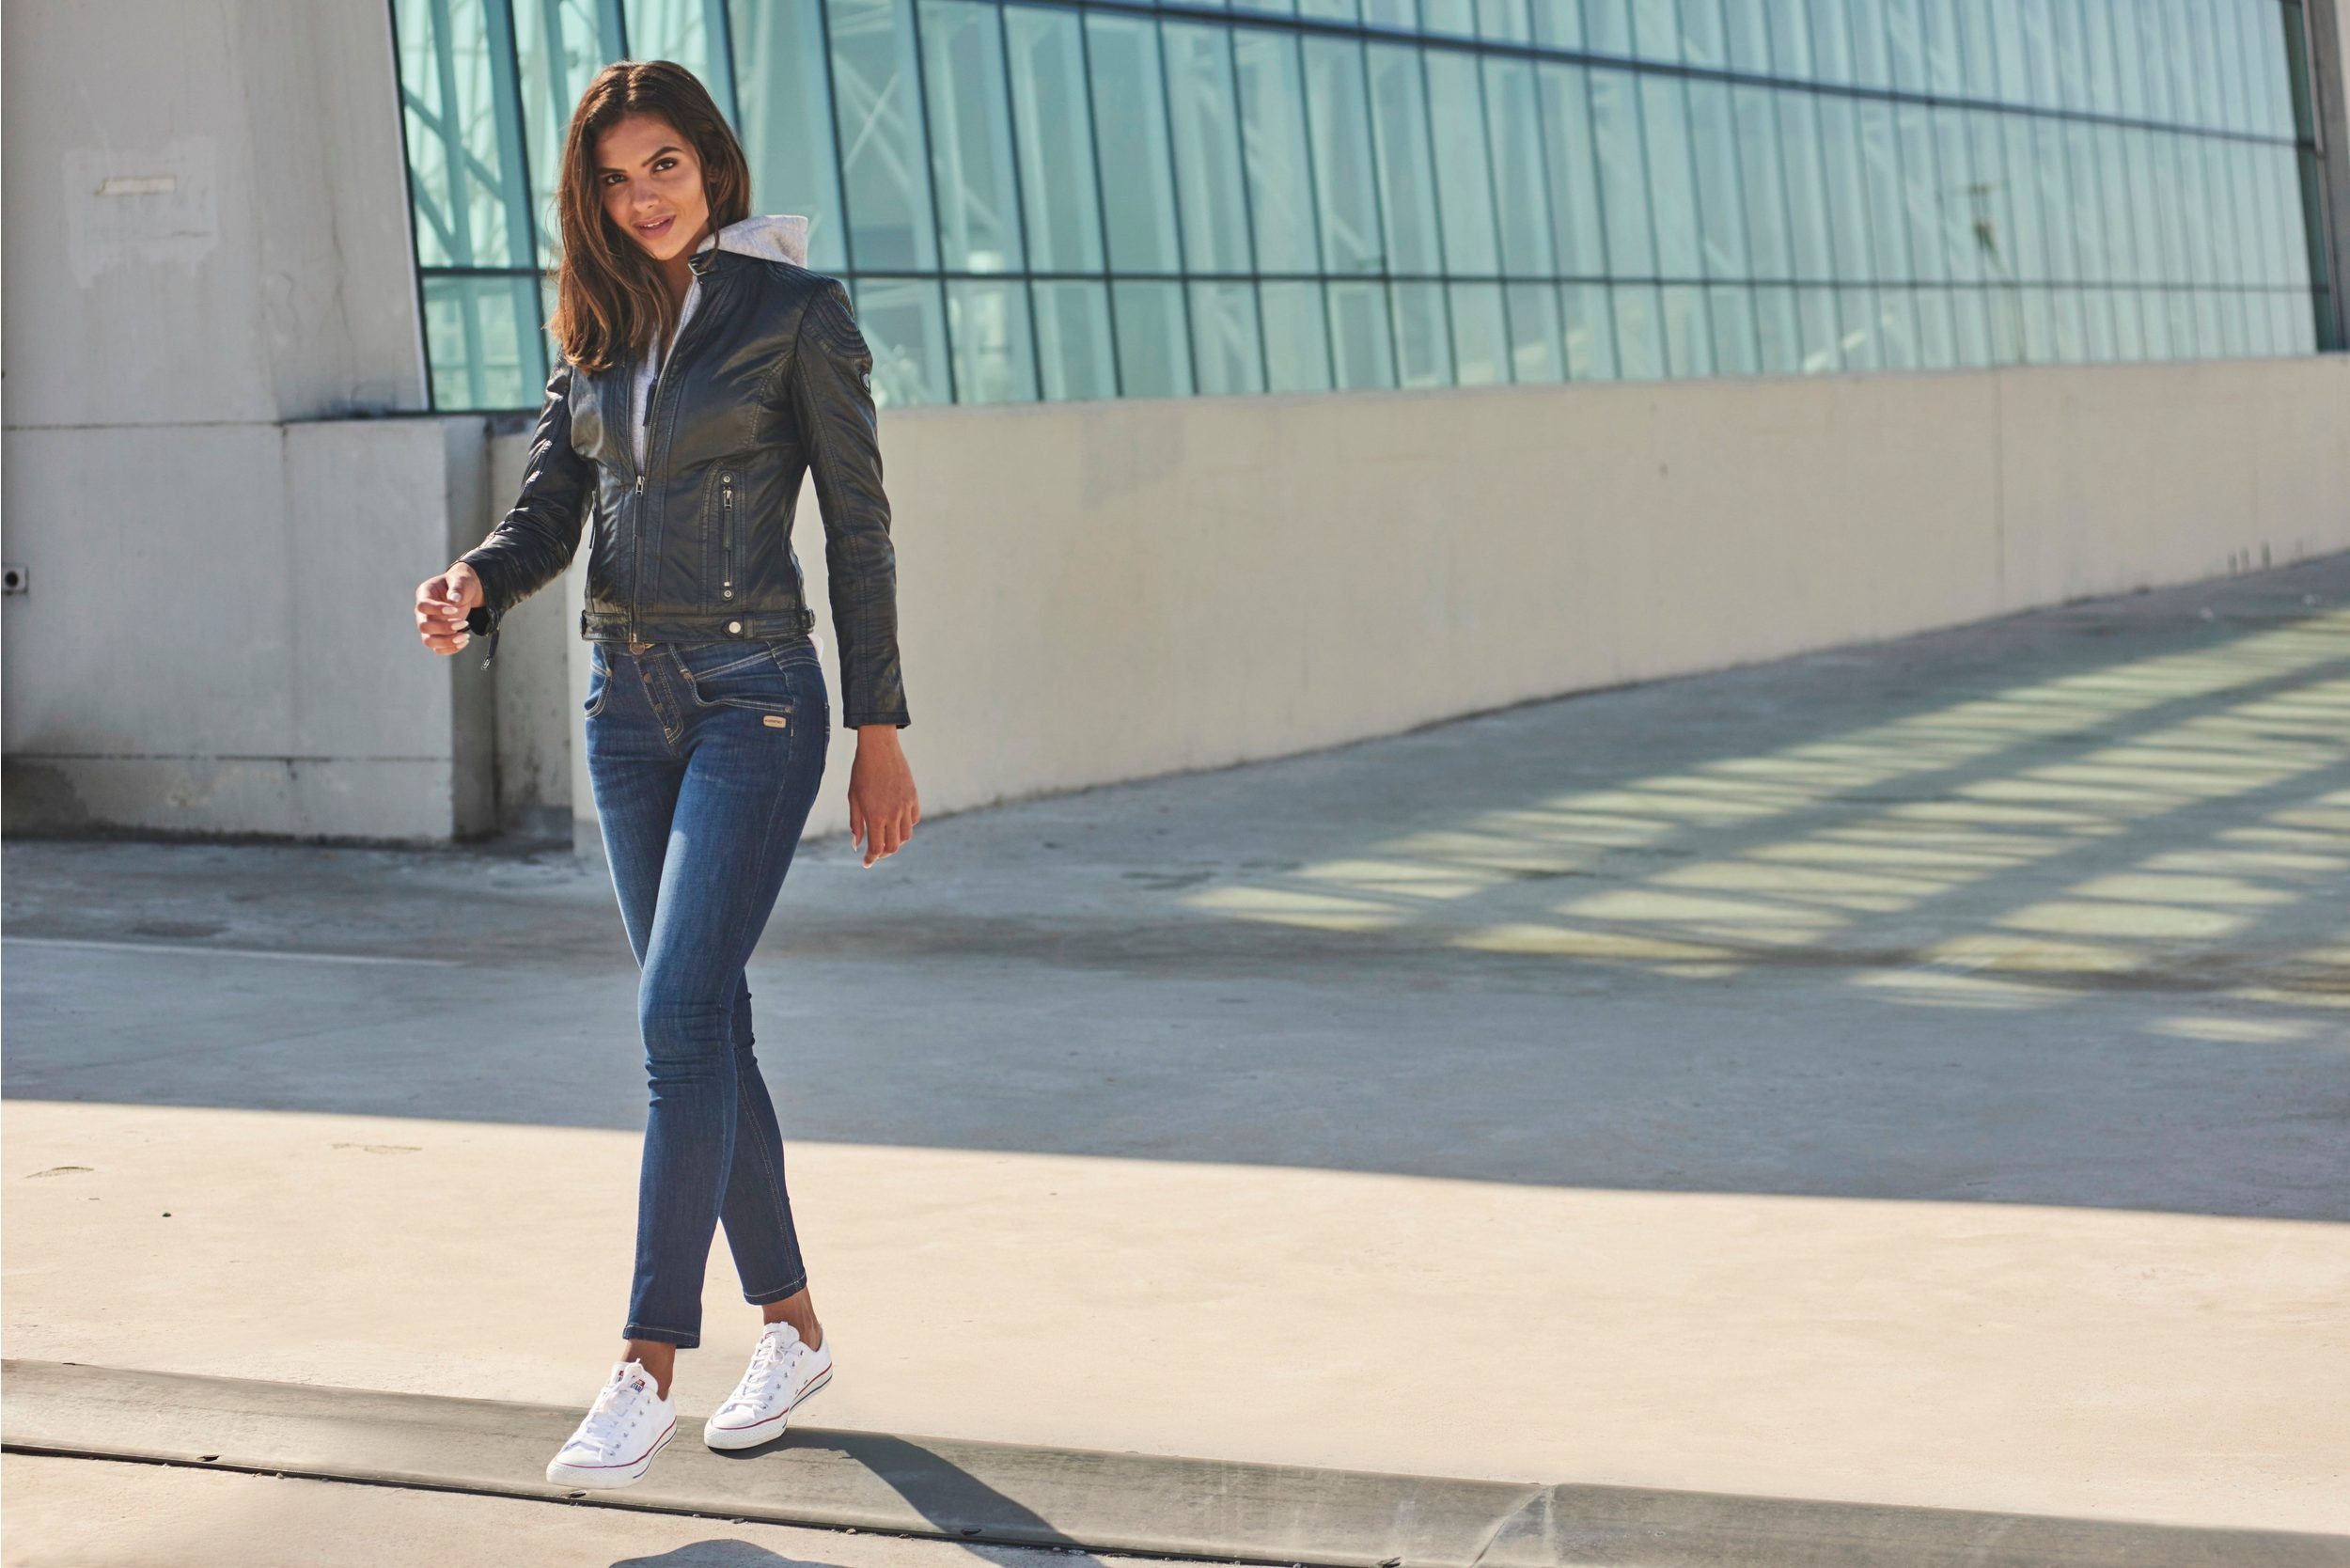 dekorativ Alexa TAILOR Slim-fit-Jeans gesteppter und mit Knopfleiste Slim TOM Passe